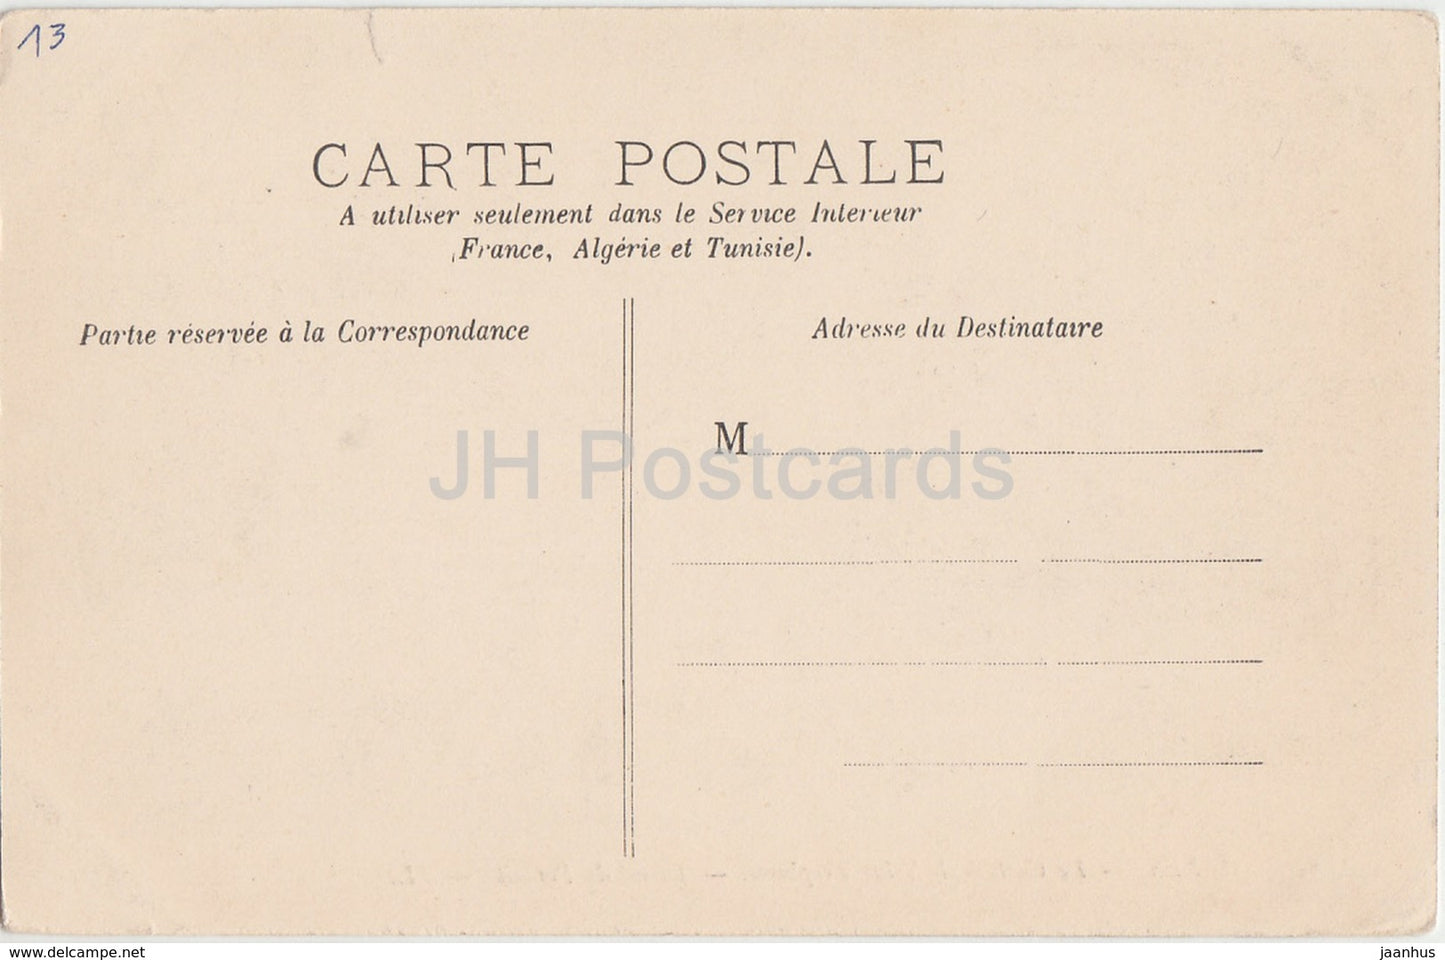 Arles - La Cathedrale Saint Trophime - Detail du Portail - Kathedrale - 28 - alte Postkarte - Frankreich - unbenutzt